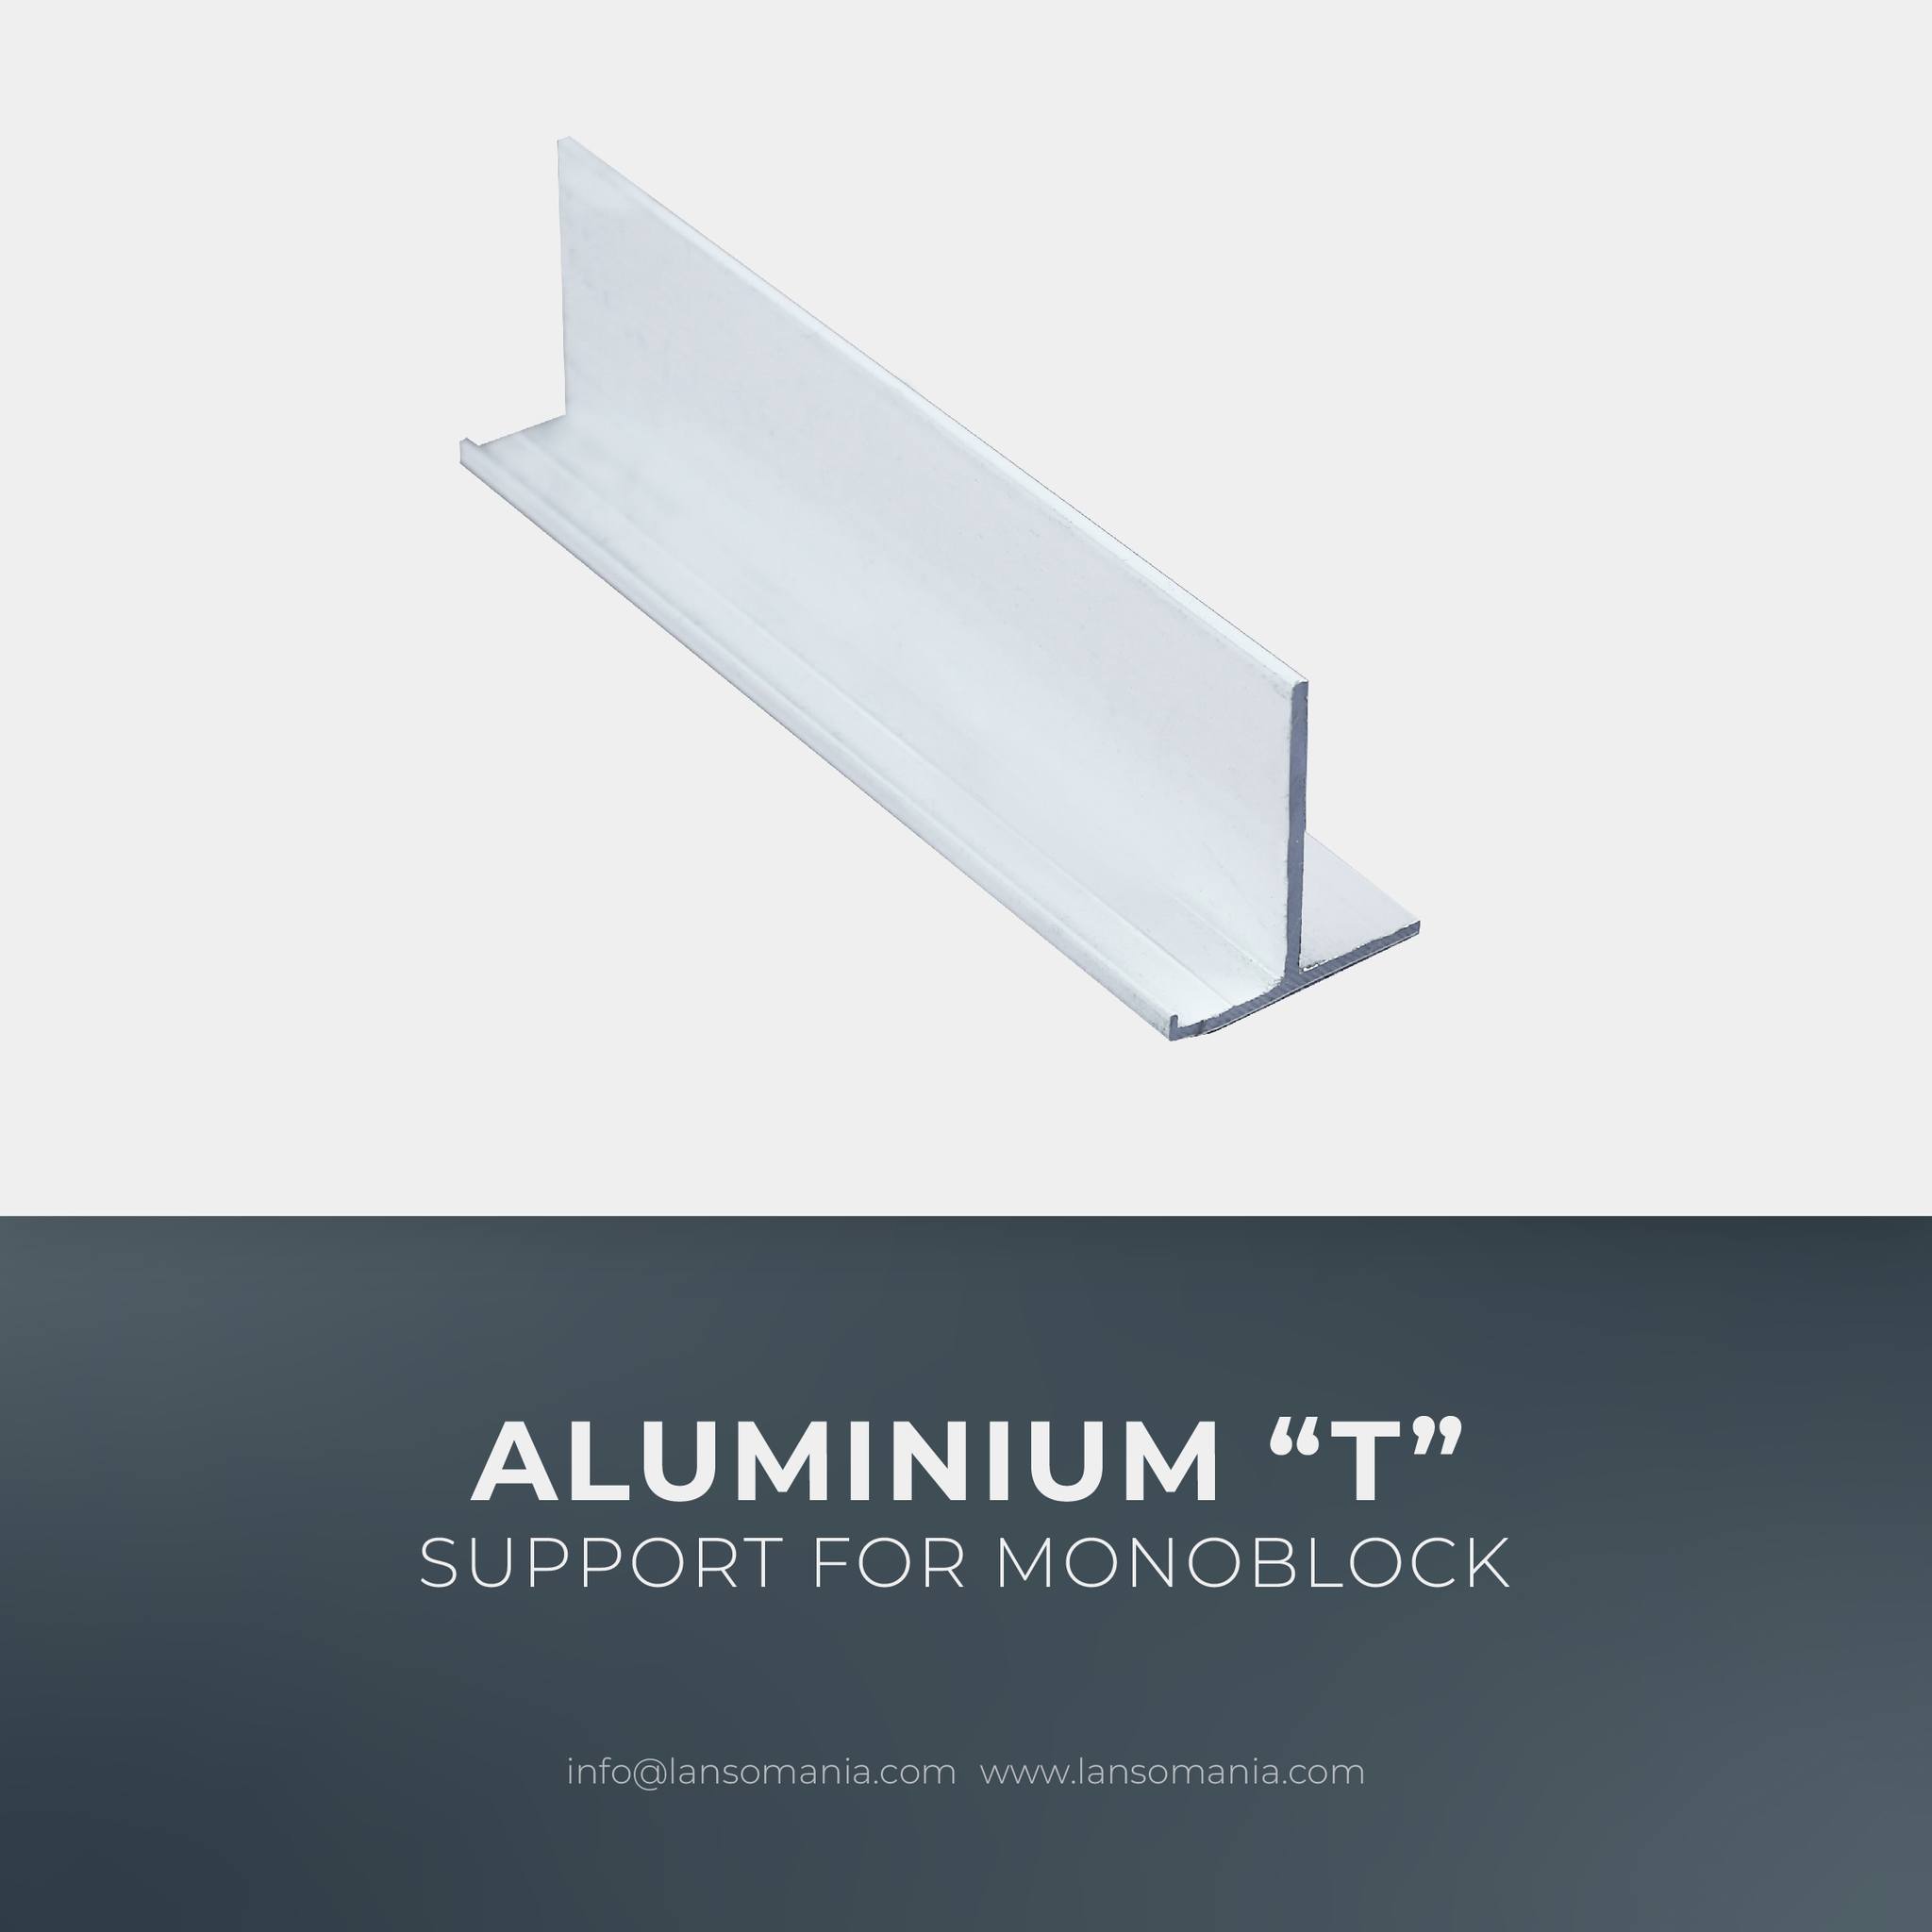 Aluminium “T” support for monoblock